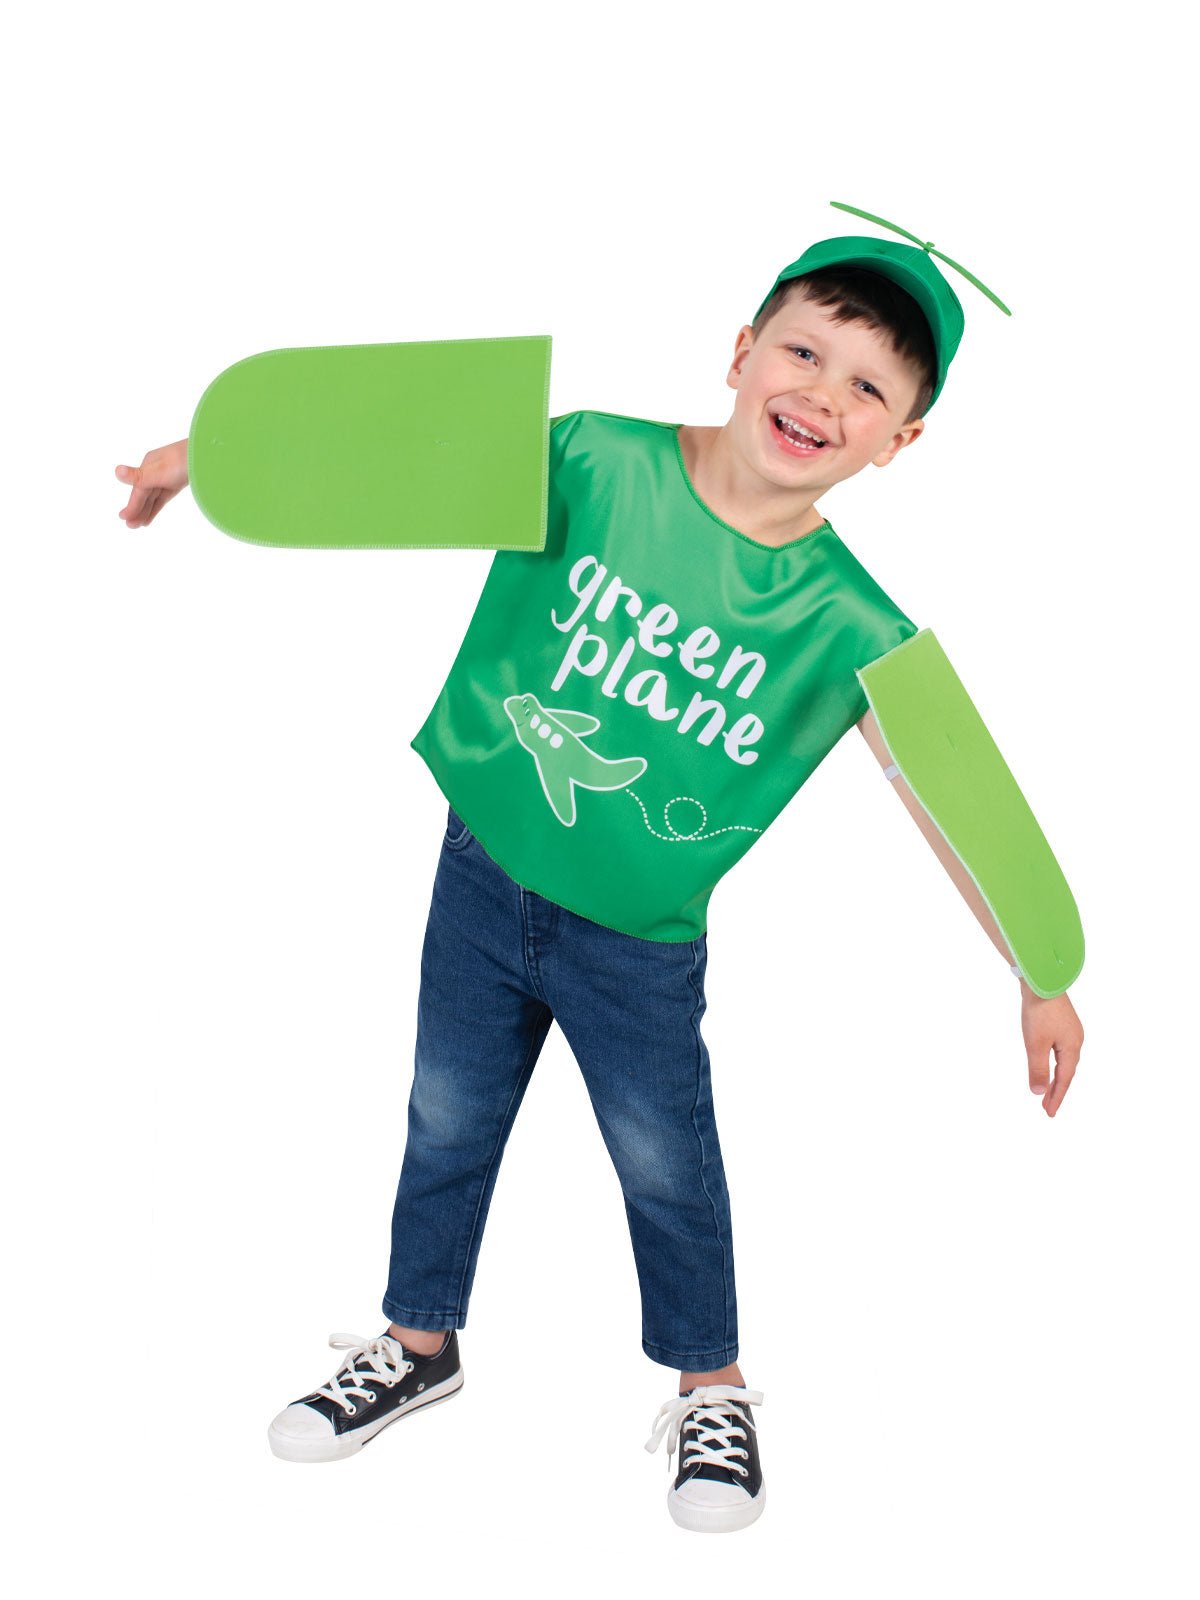 Shop Emma Memma Green Planes Costume at Kids Mega Mart